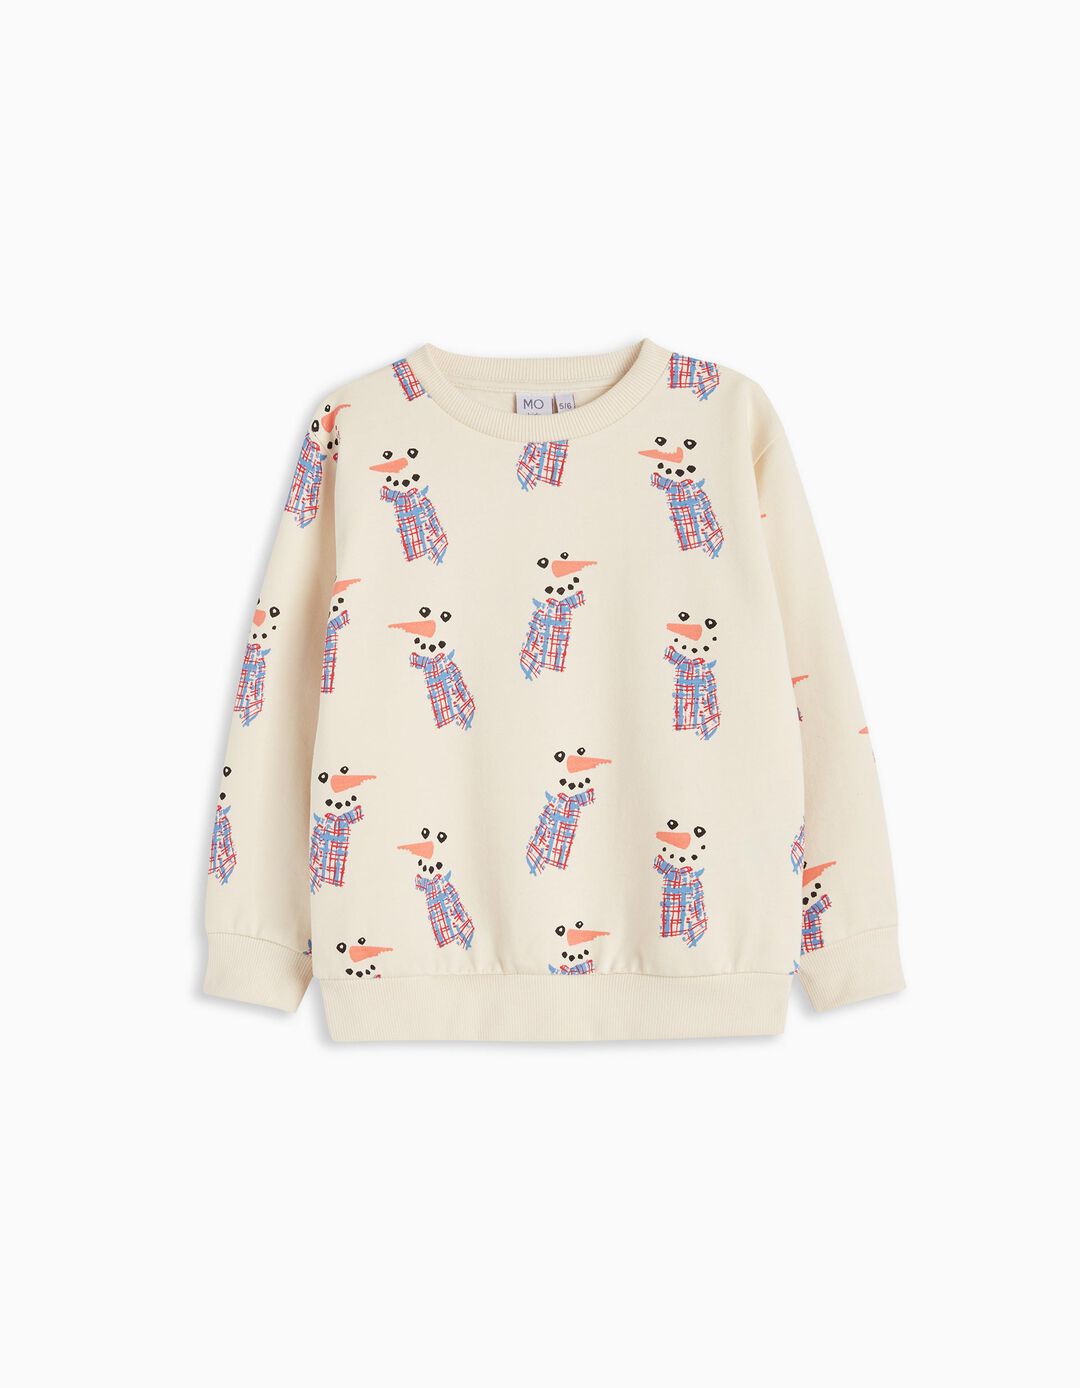 'Christmas' Fleece Sweatshirt, Boy, Light Beige